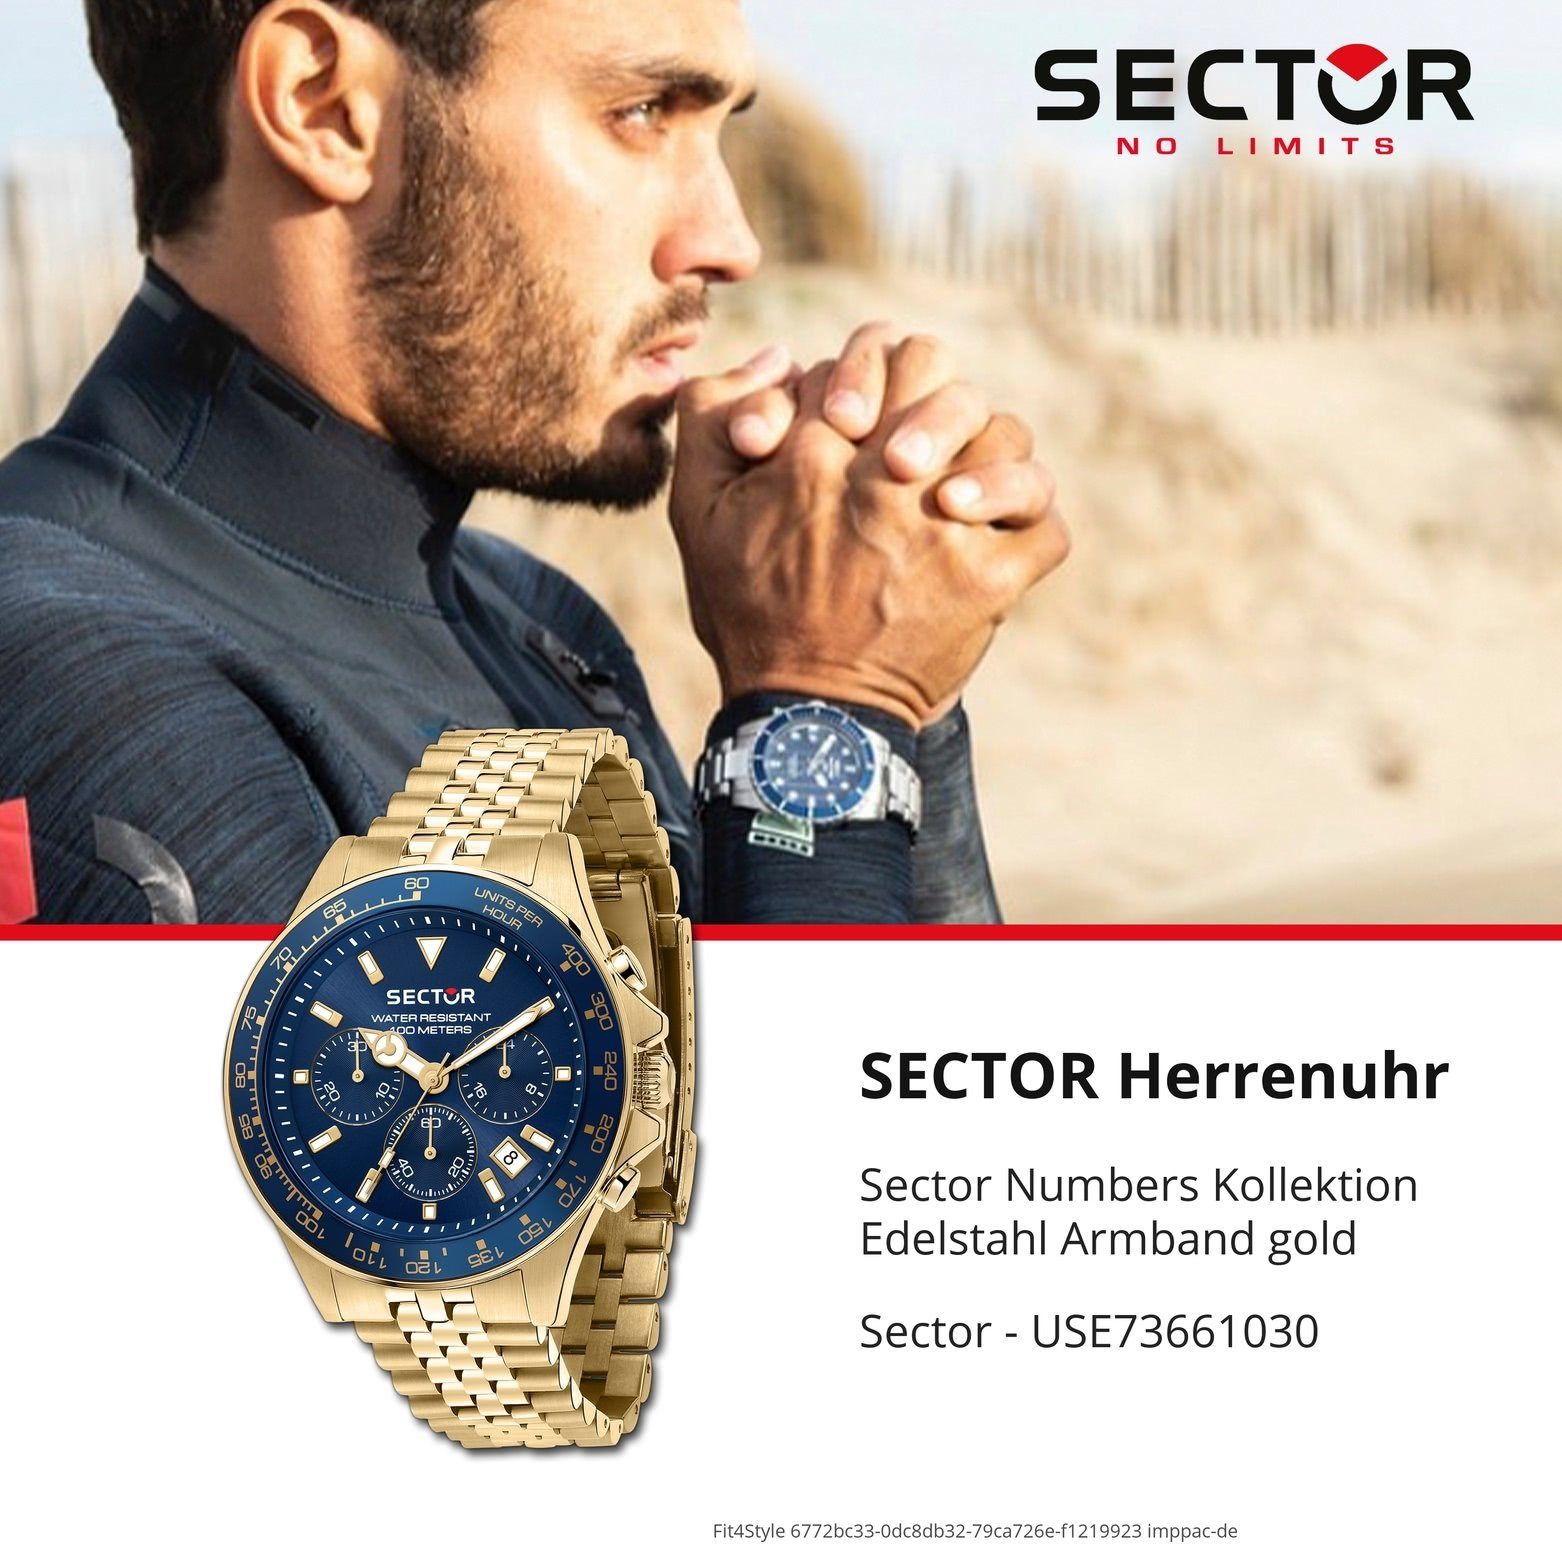 Sector Sector Herren Chrono, Fashion Chronograph (43mm), Edelstahlarmband groß rund, gold, Armbanduhr Armbanduhr Herren